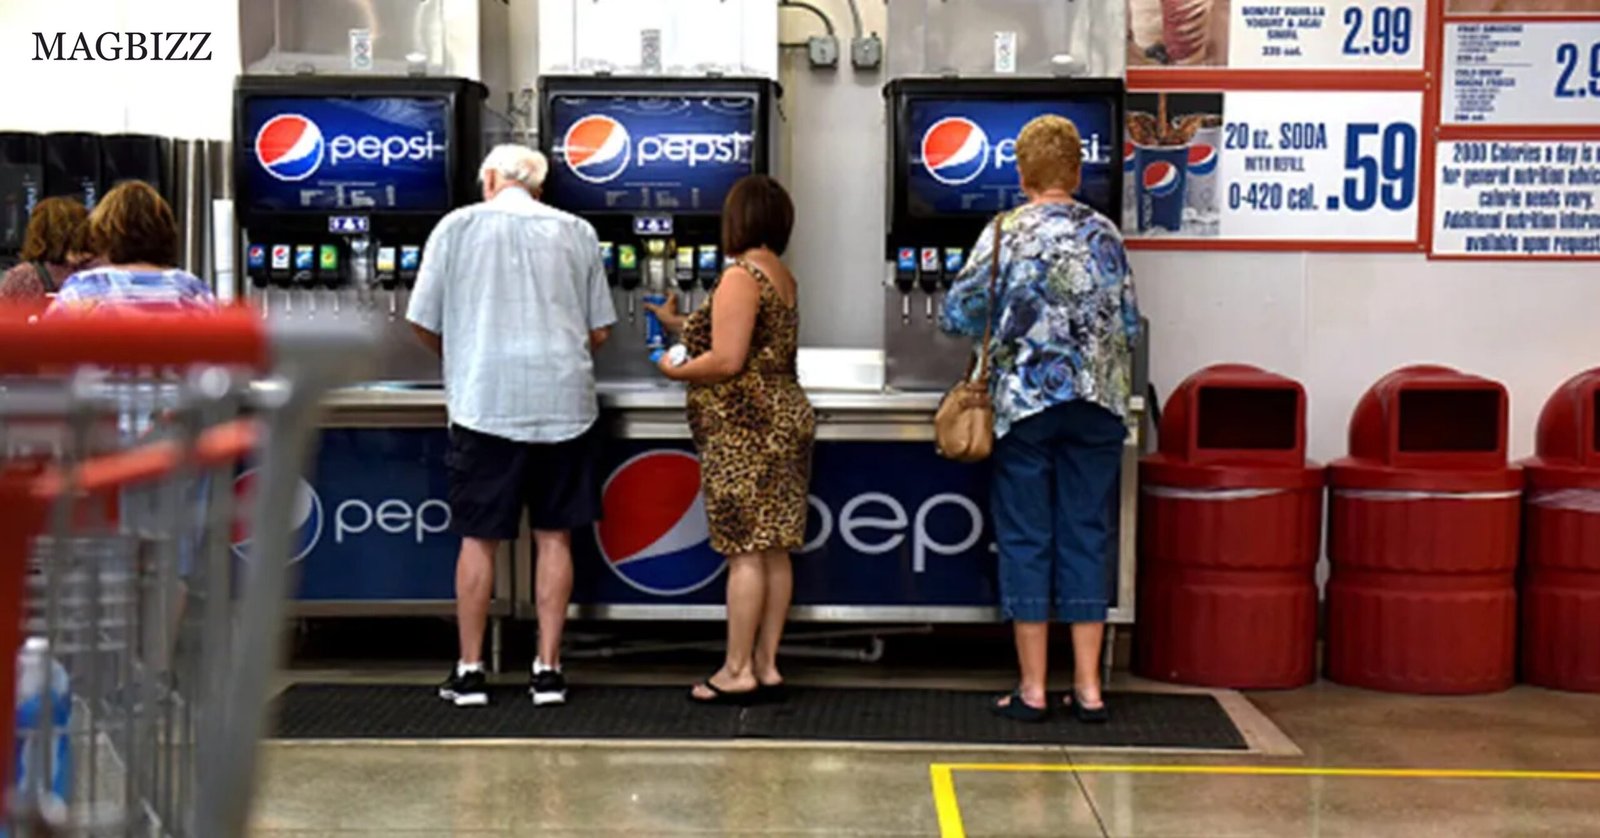 PepsiCo and Pepsi